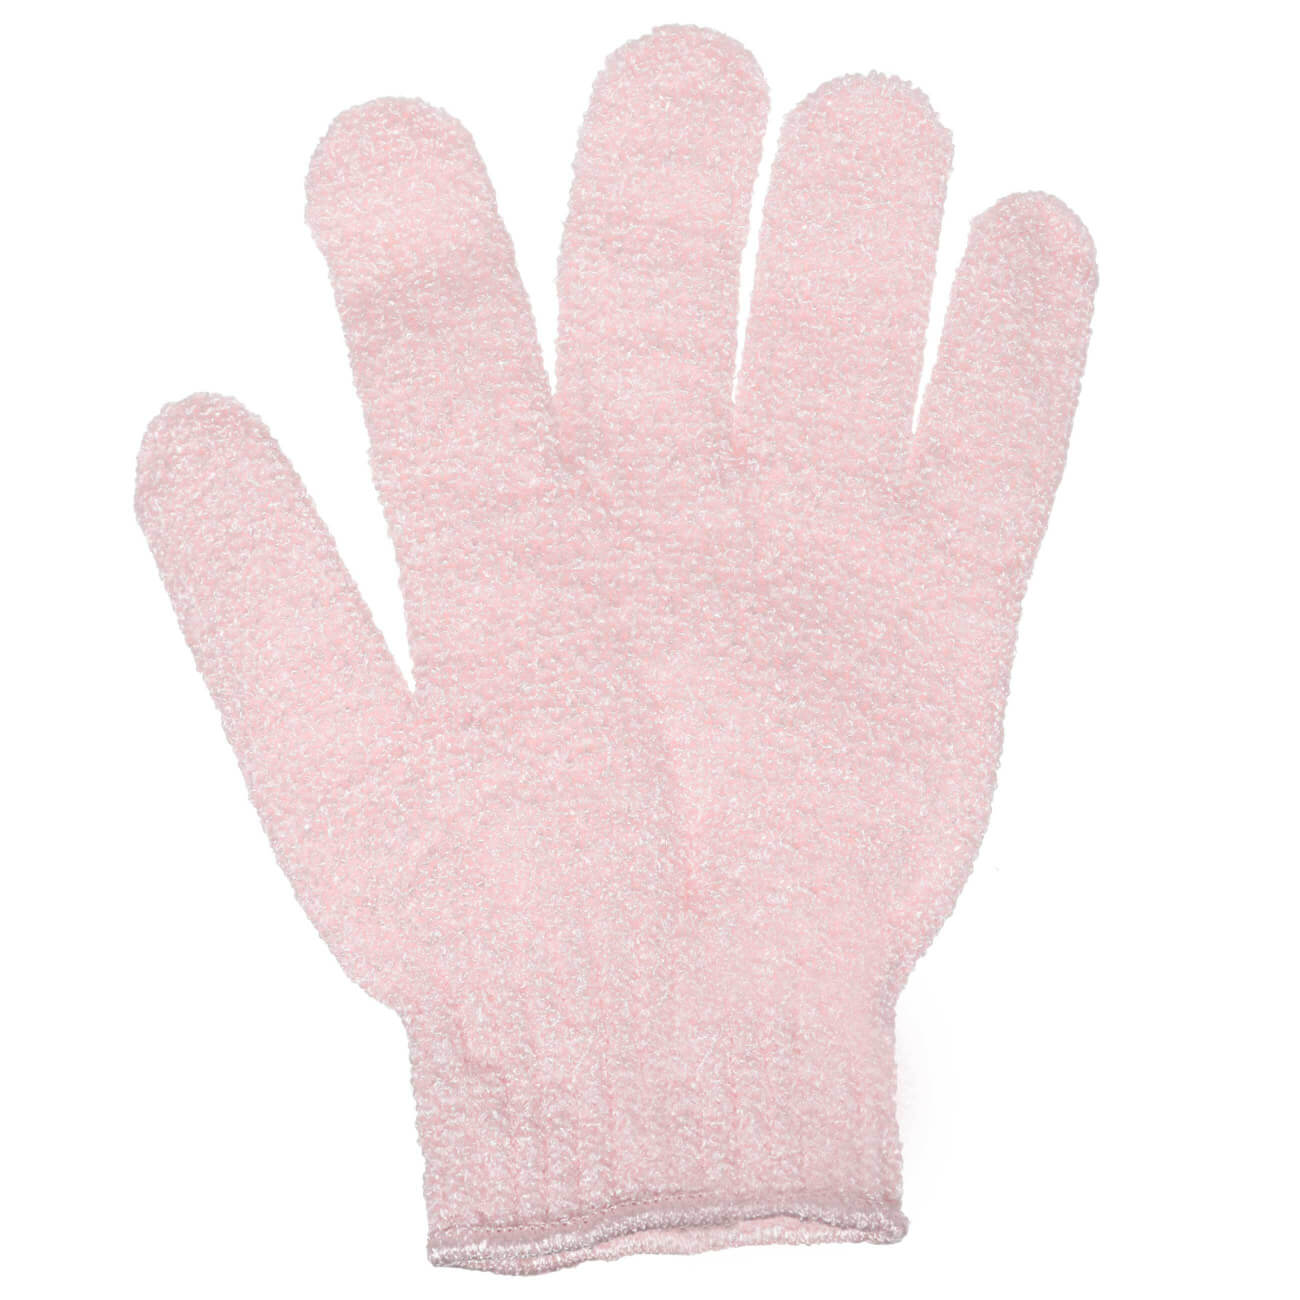 Перчатка для мытья тела, 20 см, 2 шт, отшелушивающая, нейлон, пудровая, Glamor